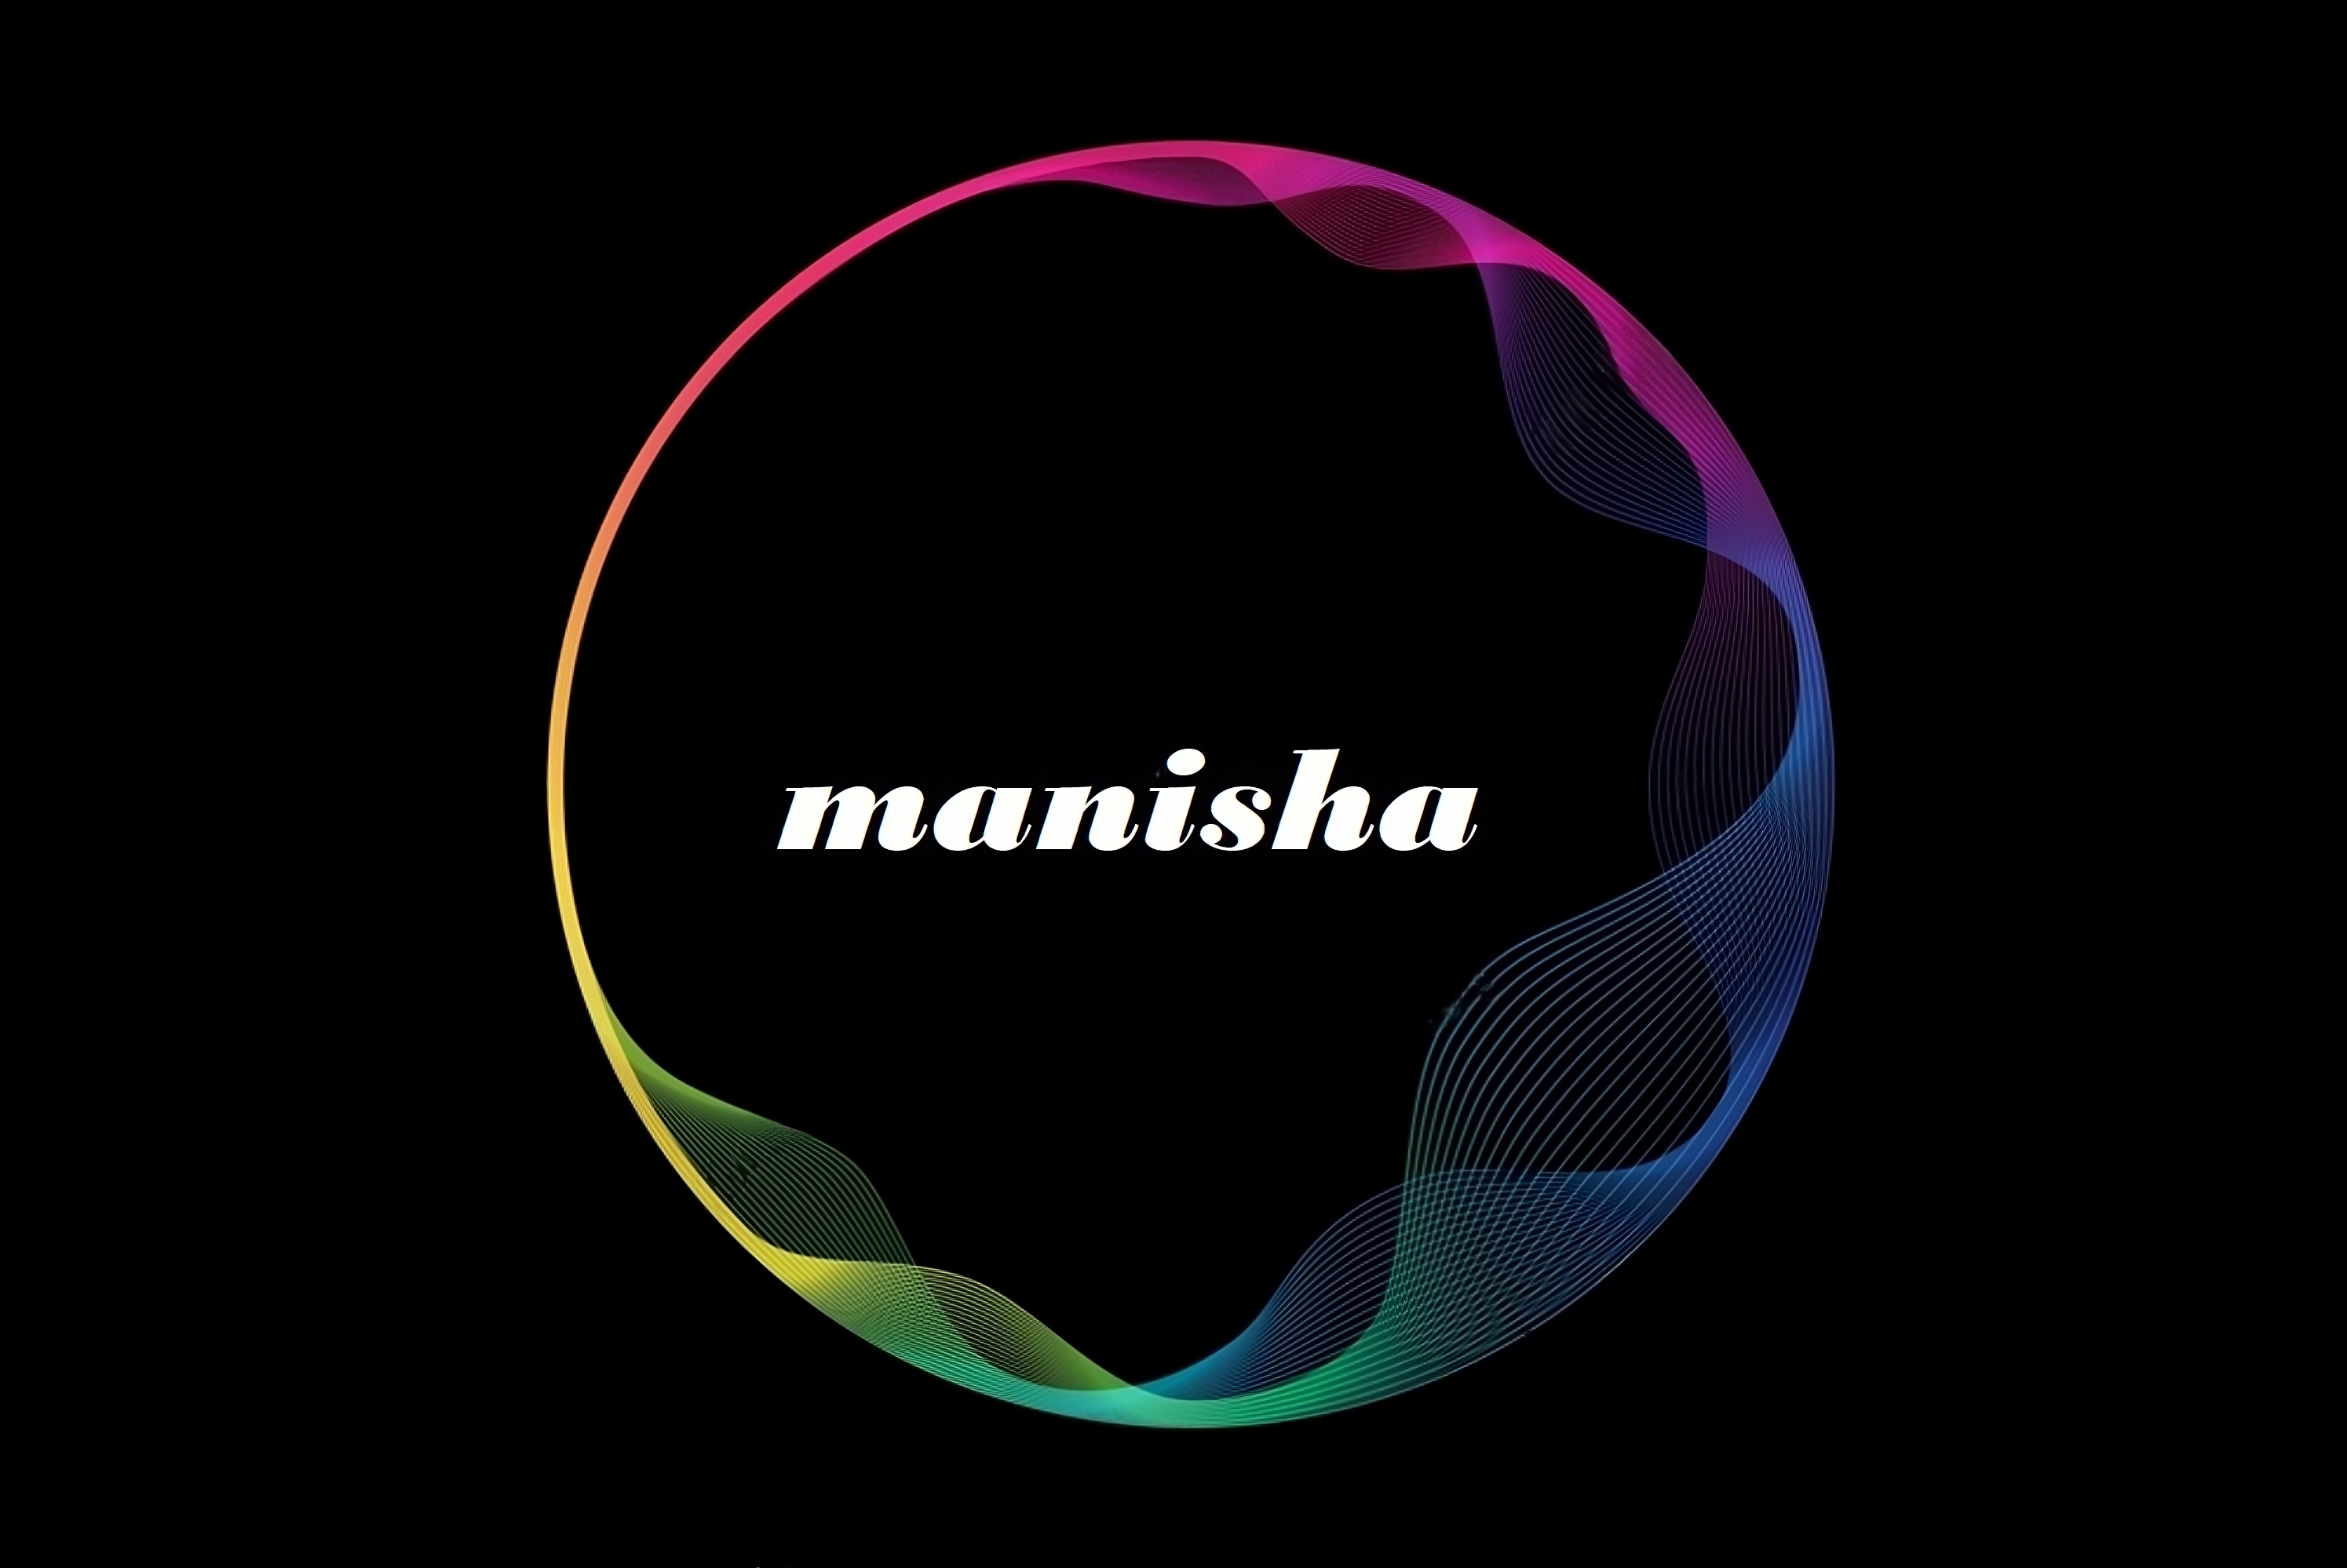 Manisha Name - abstract circle